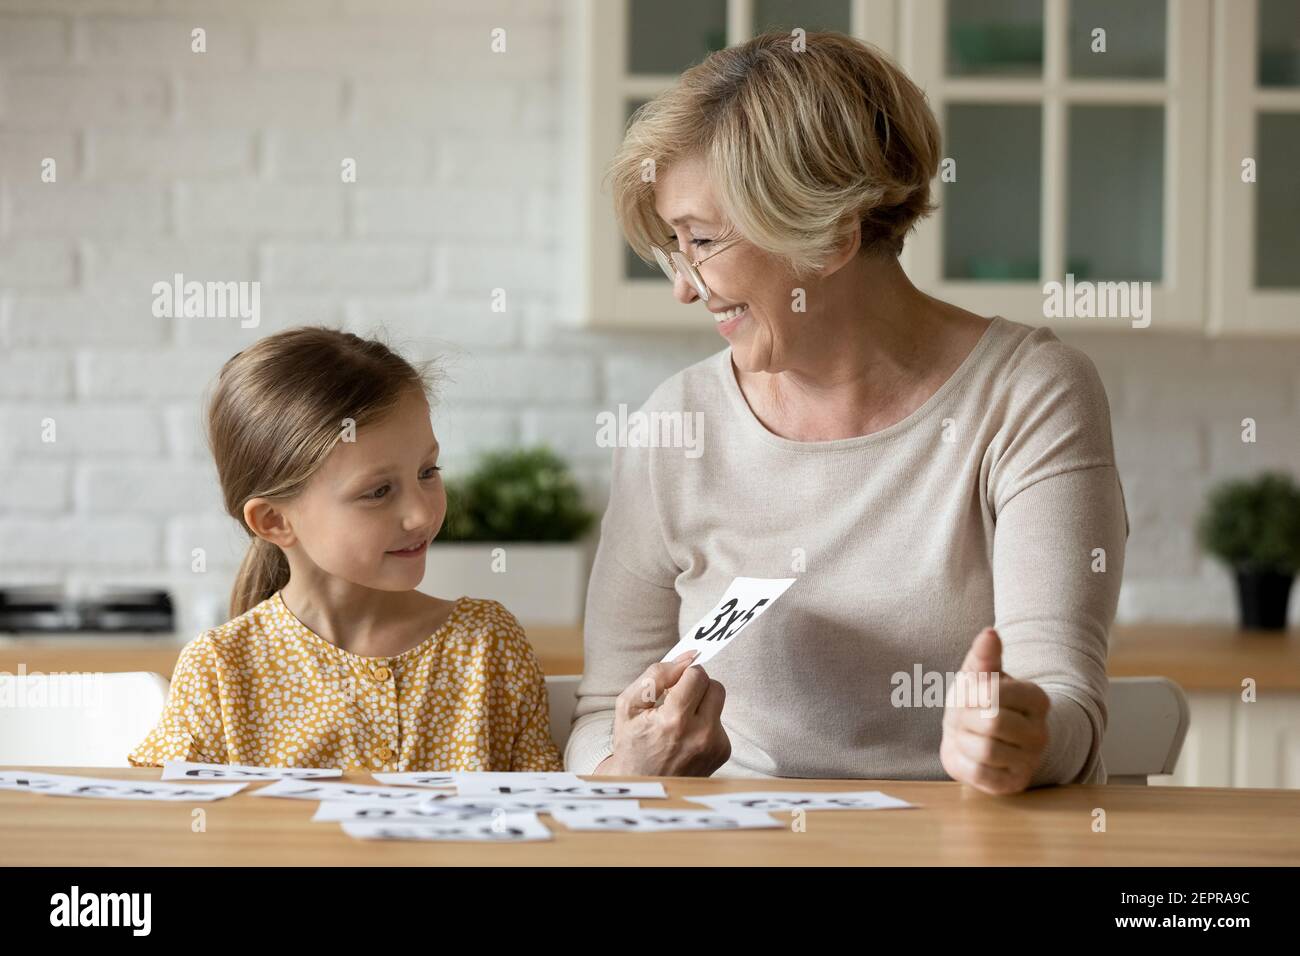 Una maestra de edad estudia matemáticas con una niña pupilo usando tarjetas Foto de stock